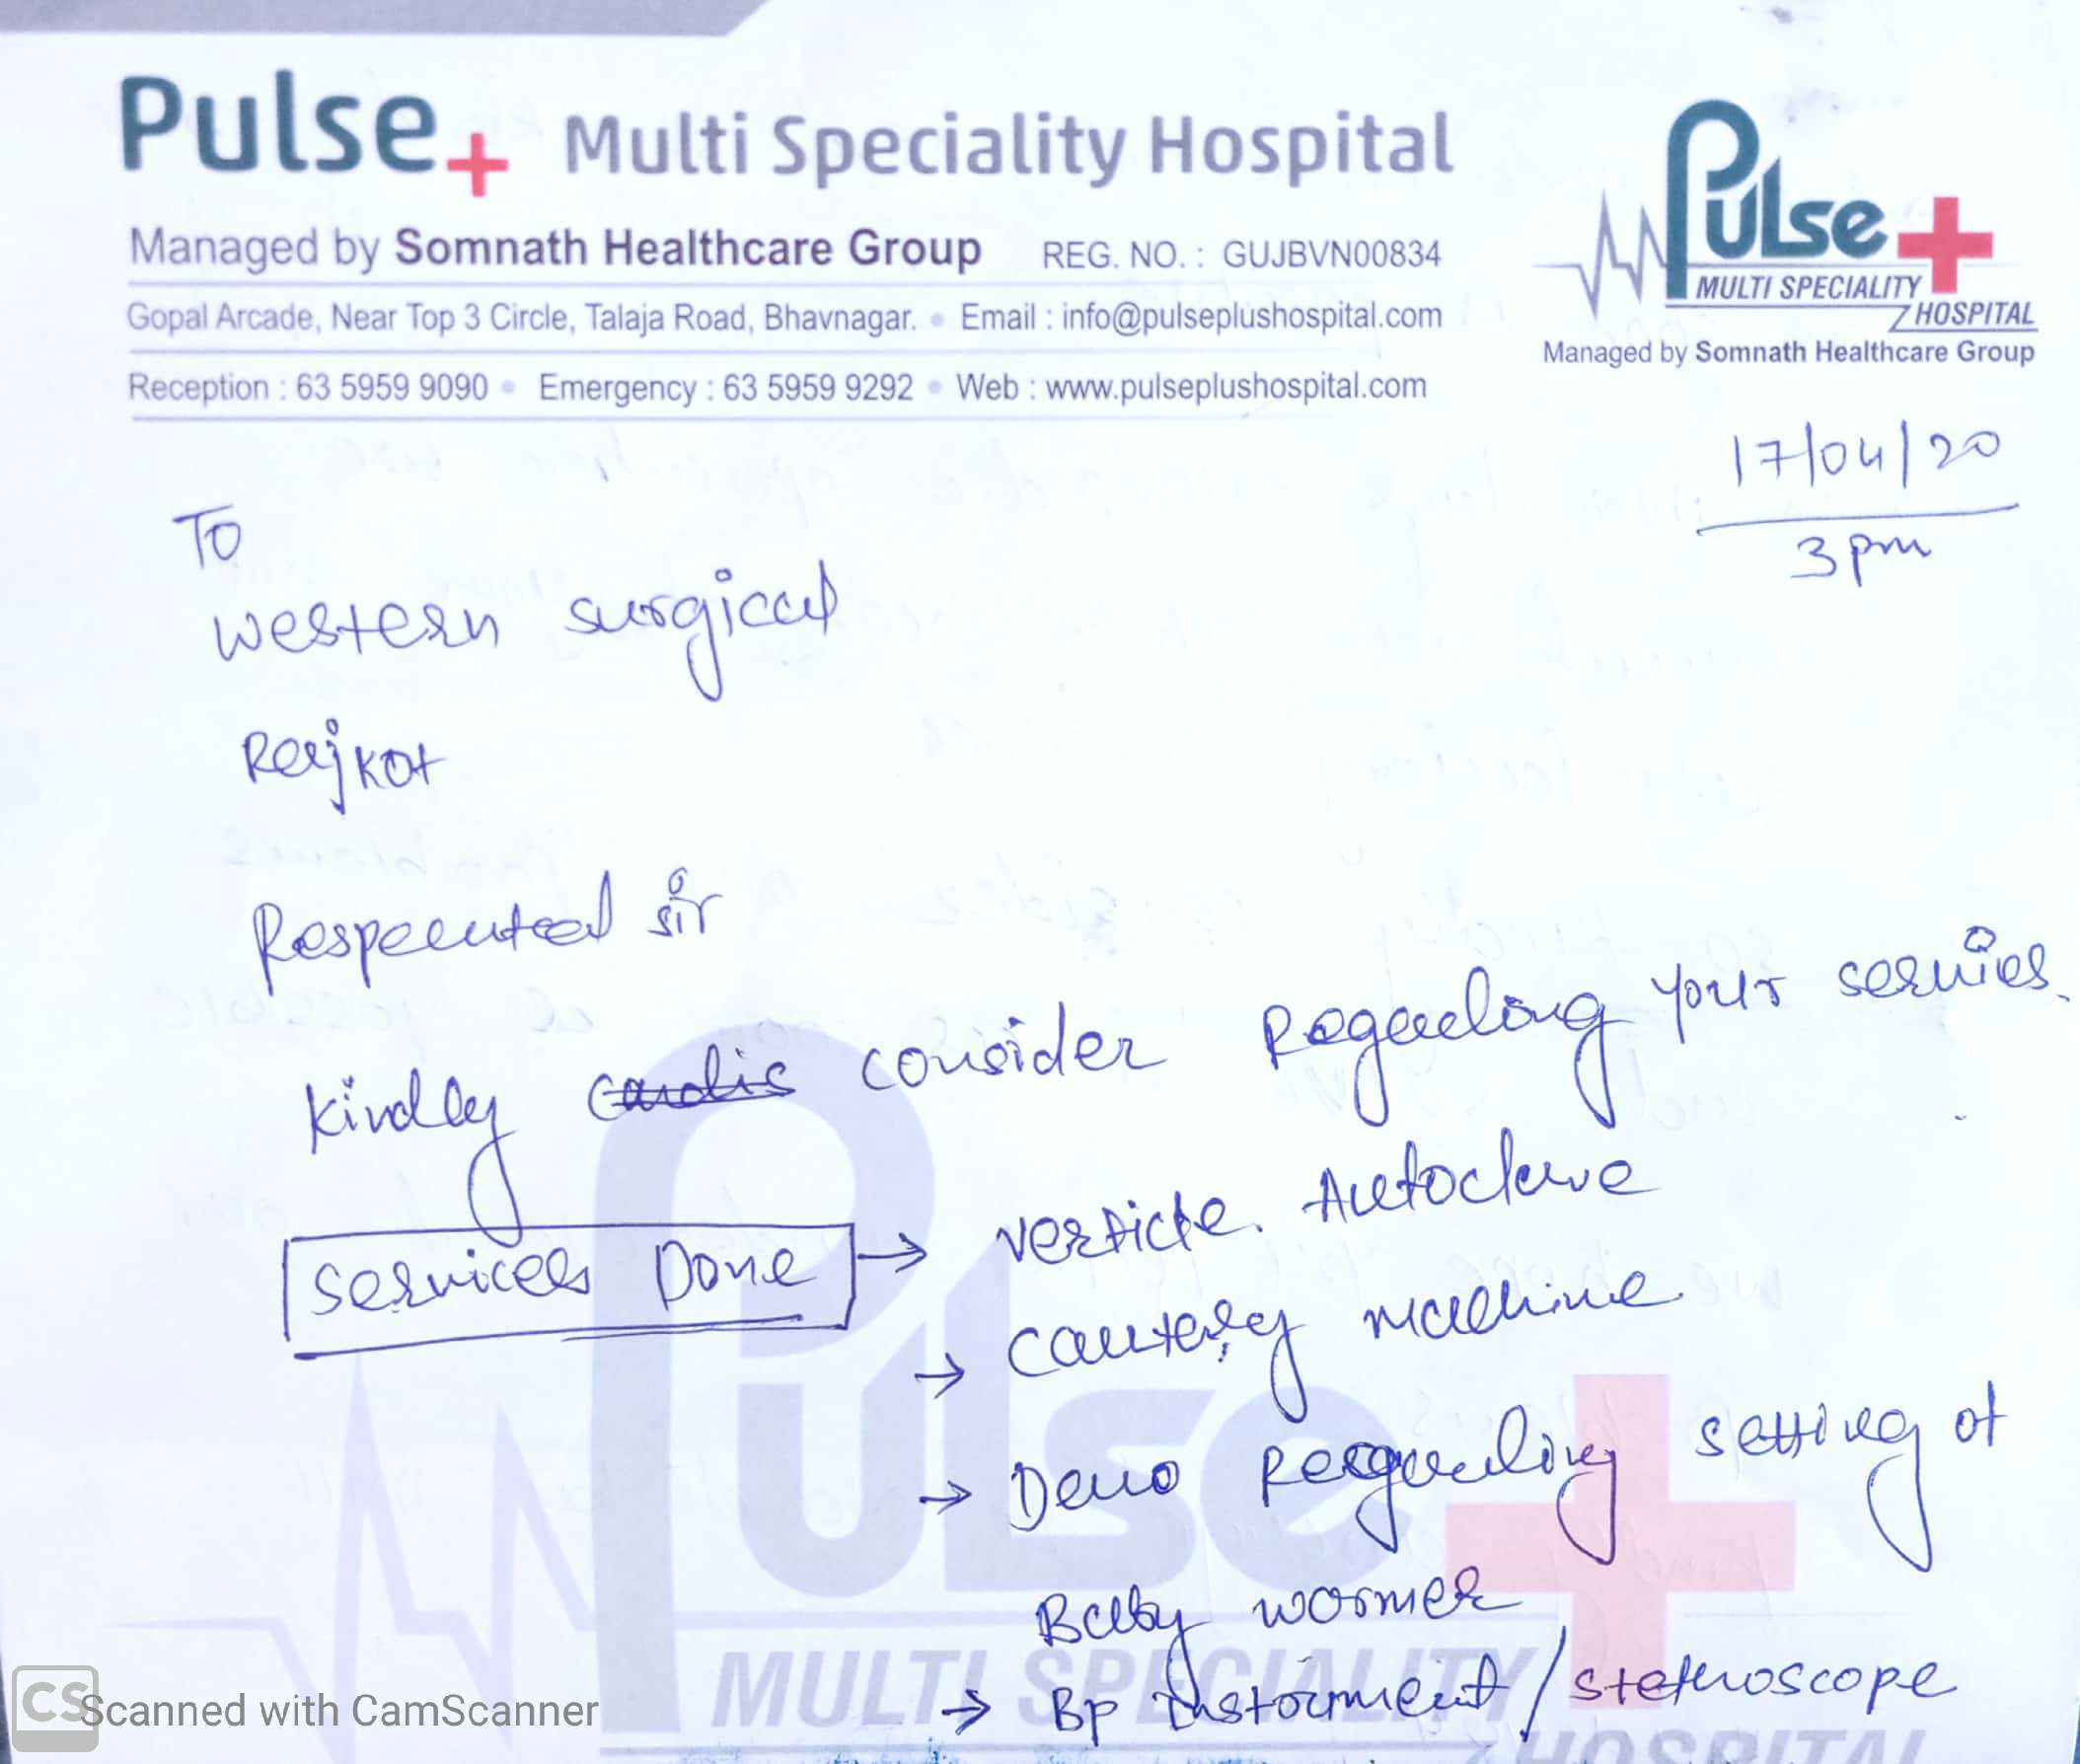 PULSE MULTI SPECIALITY HOSPITAL - BHAVNAGAR 